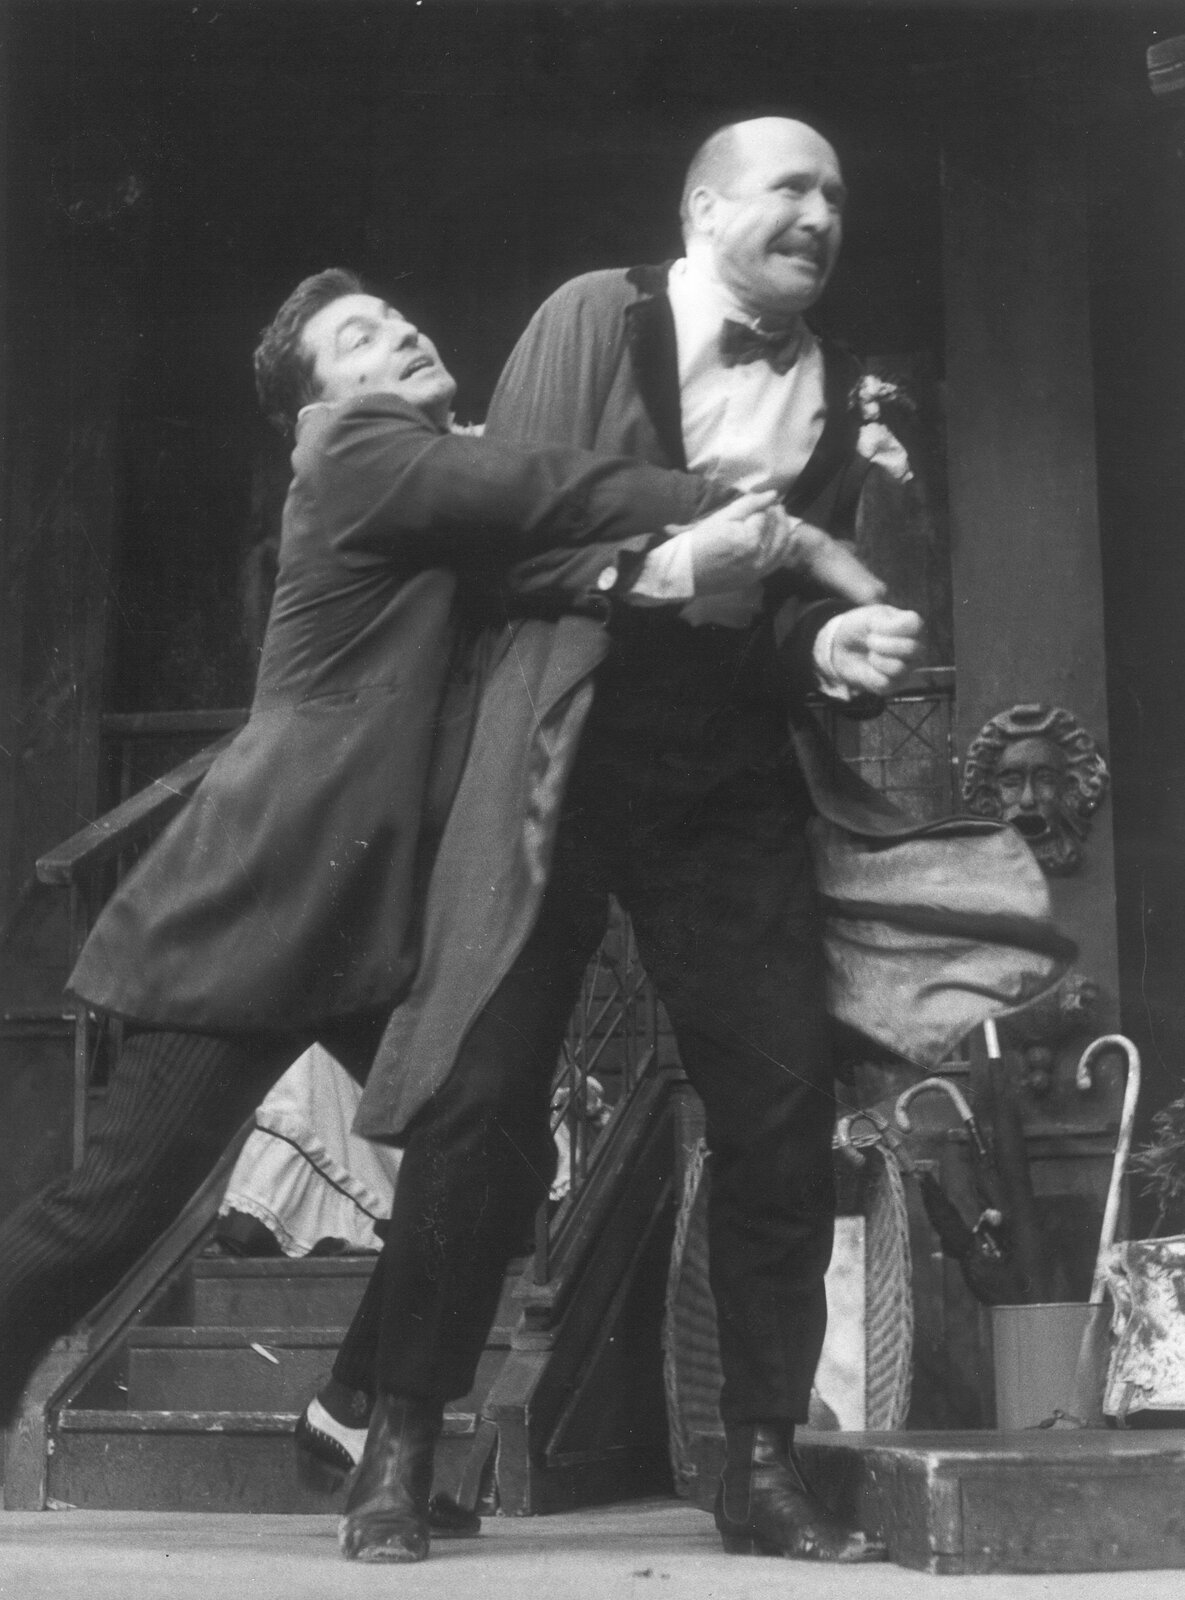 1992: Divadelní představení Lakomec